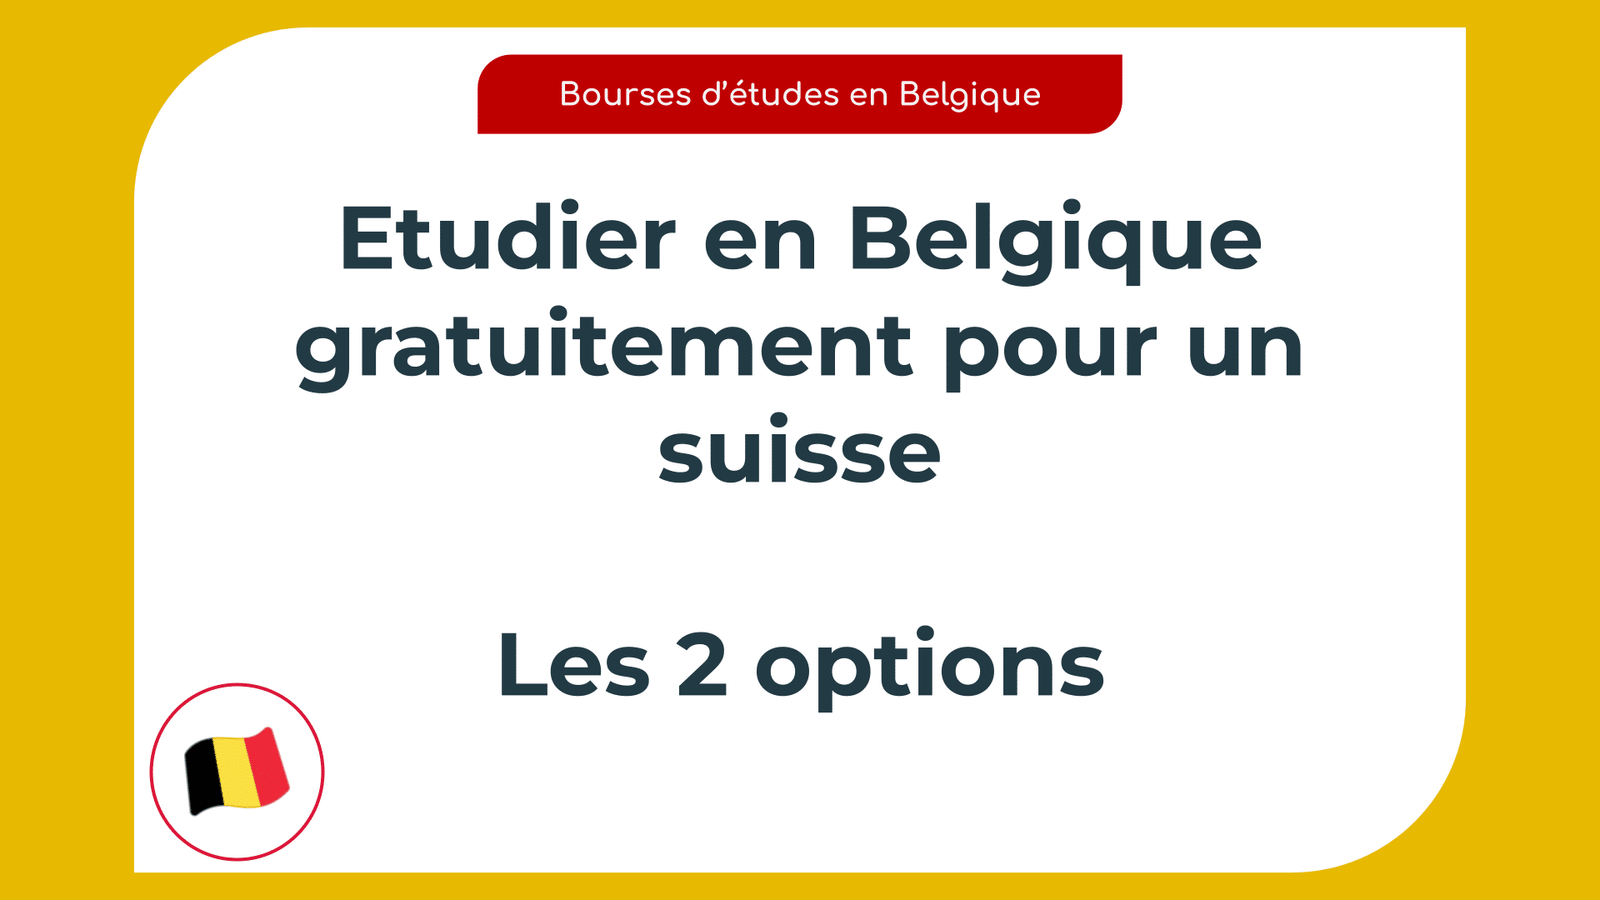 Etudier en Belgique gratuitement pour un suisse